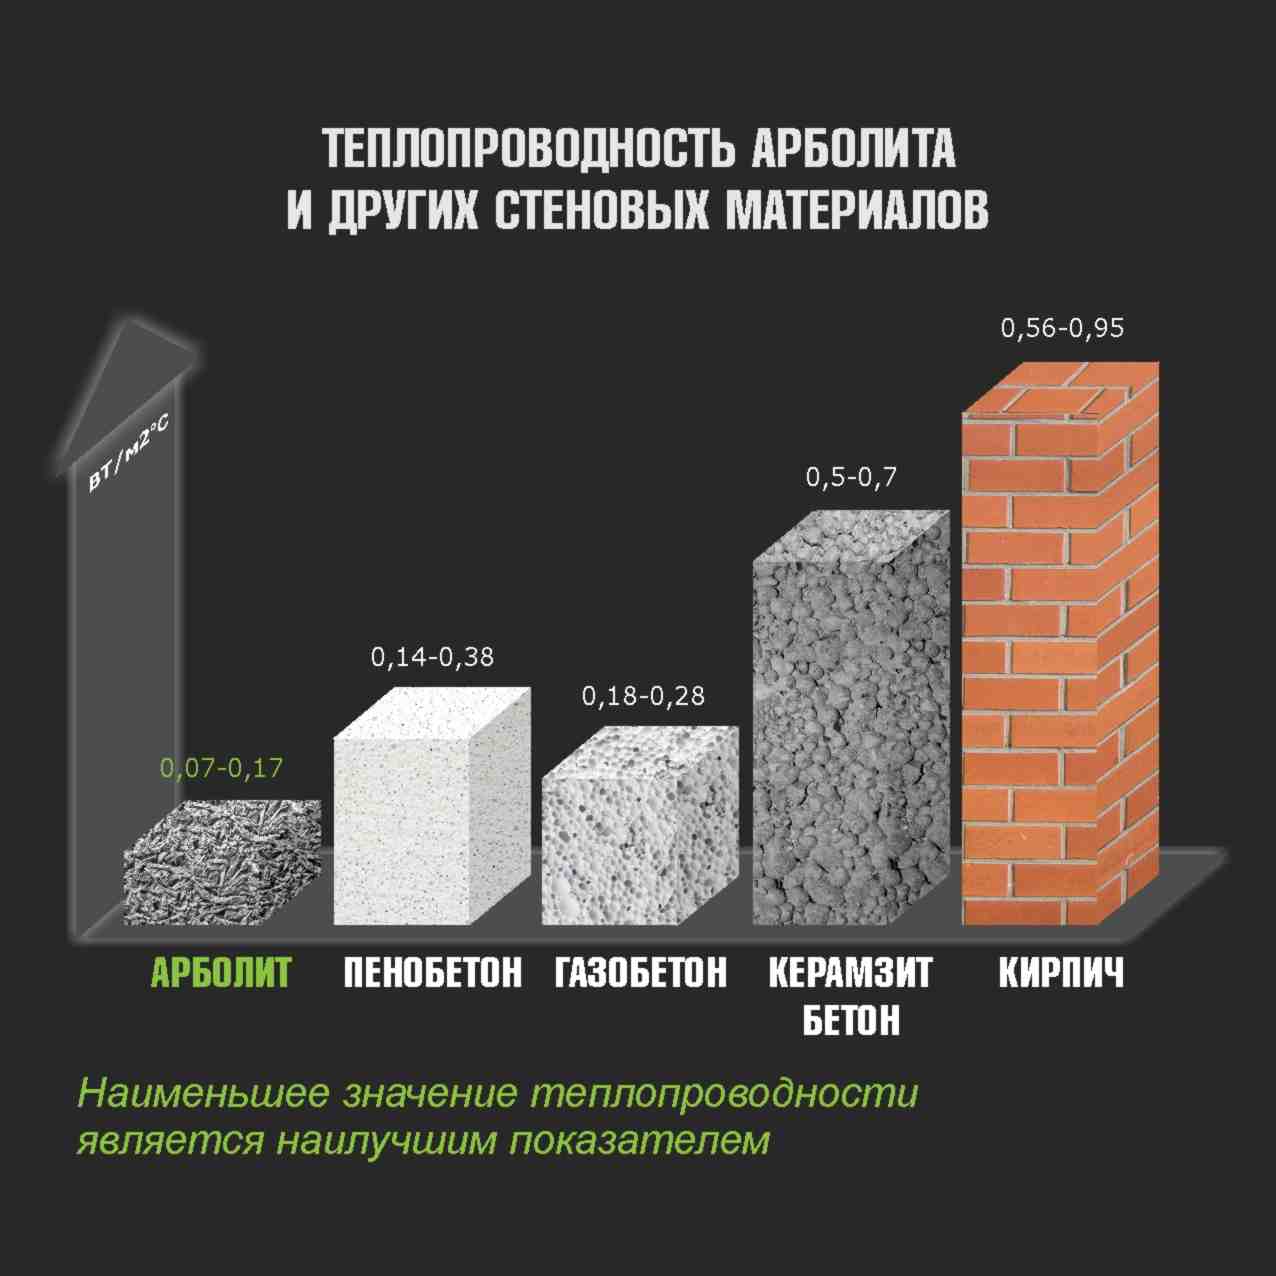 Как утеплить дом из керамзитобетонных блоков ⋆ прорабофф.рф